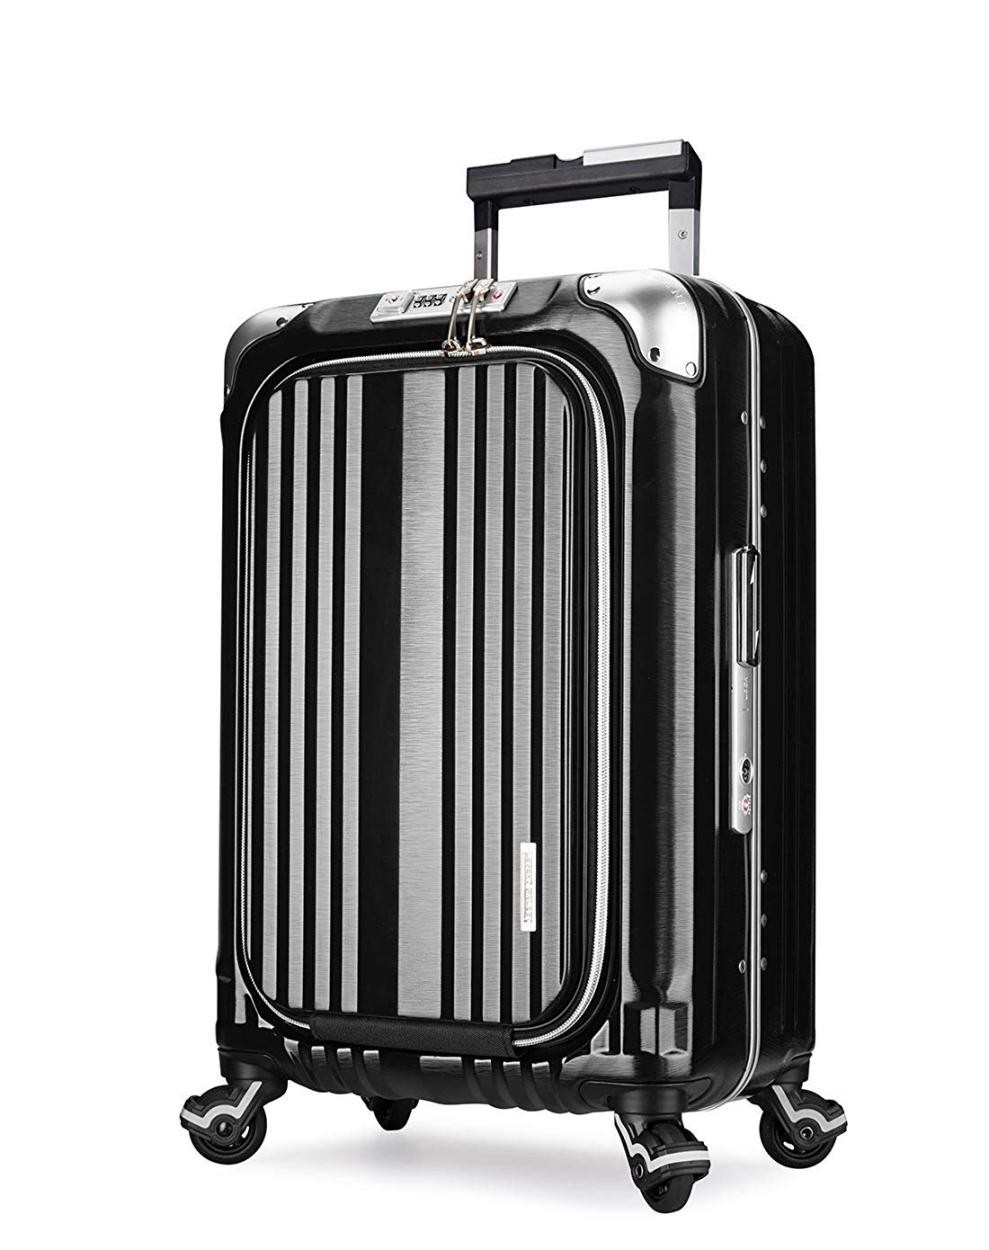 スーツケース 機内持ち込み 小型 軽量 SSサイズ ビジネス キャリー ビジネスバッグ レジェンドウォーカー GRAND 6603-50